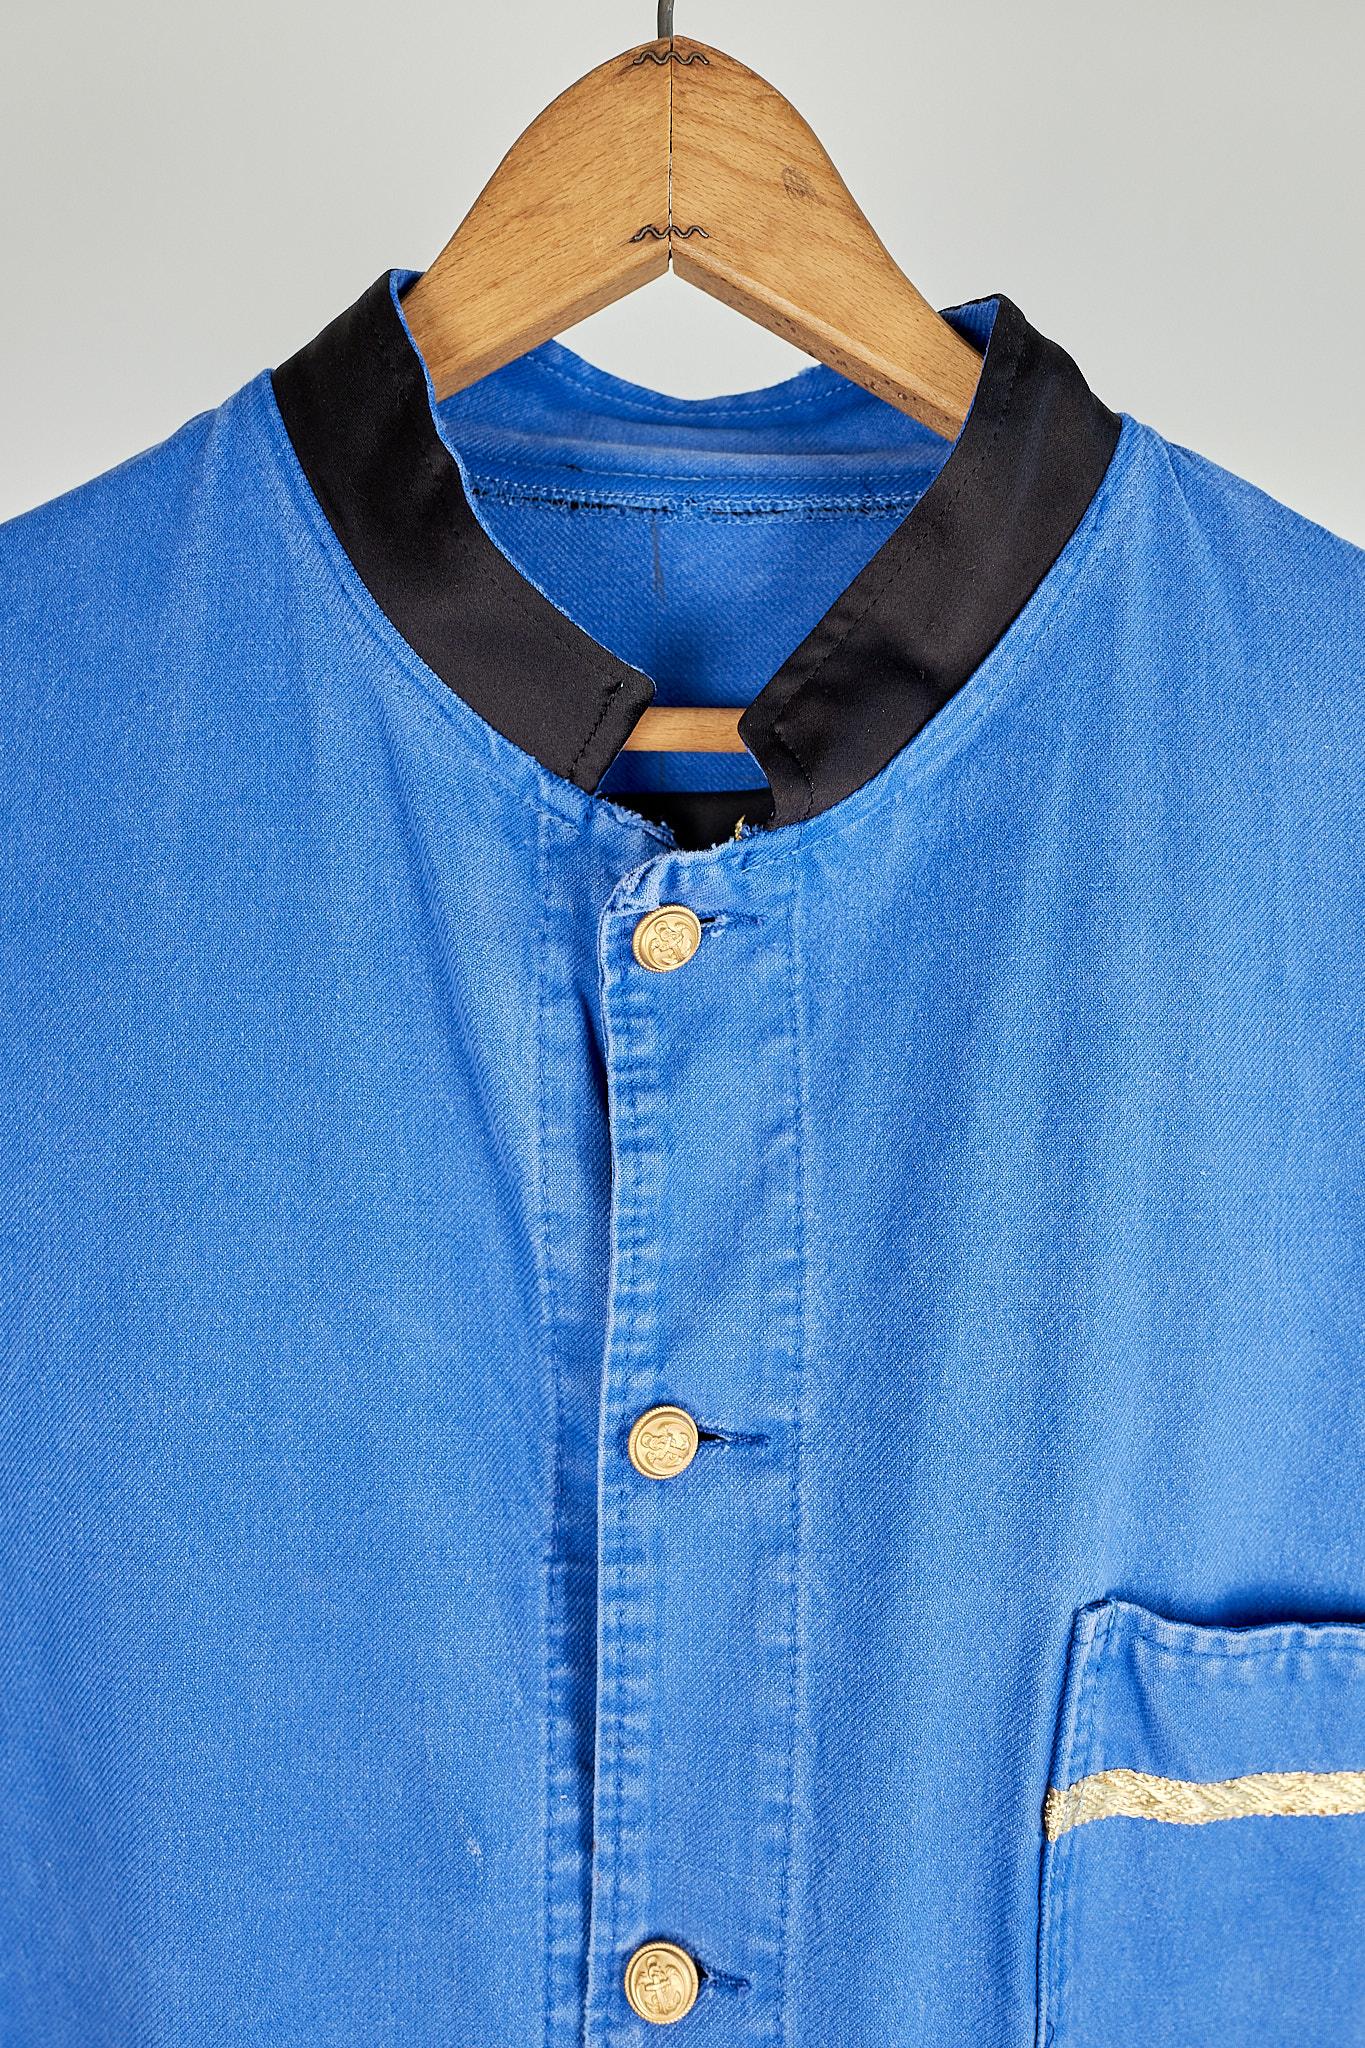  Wool Fringes Embellished Pockets Blue Cobalt Cotton French Work Wear J Dauphin 3